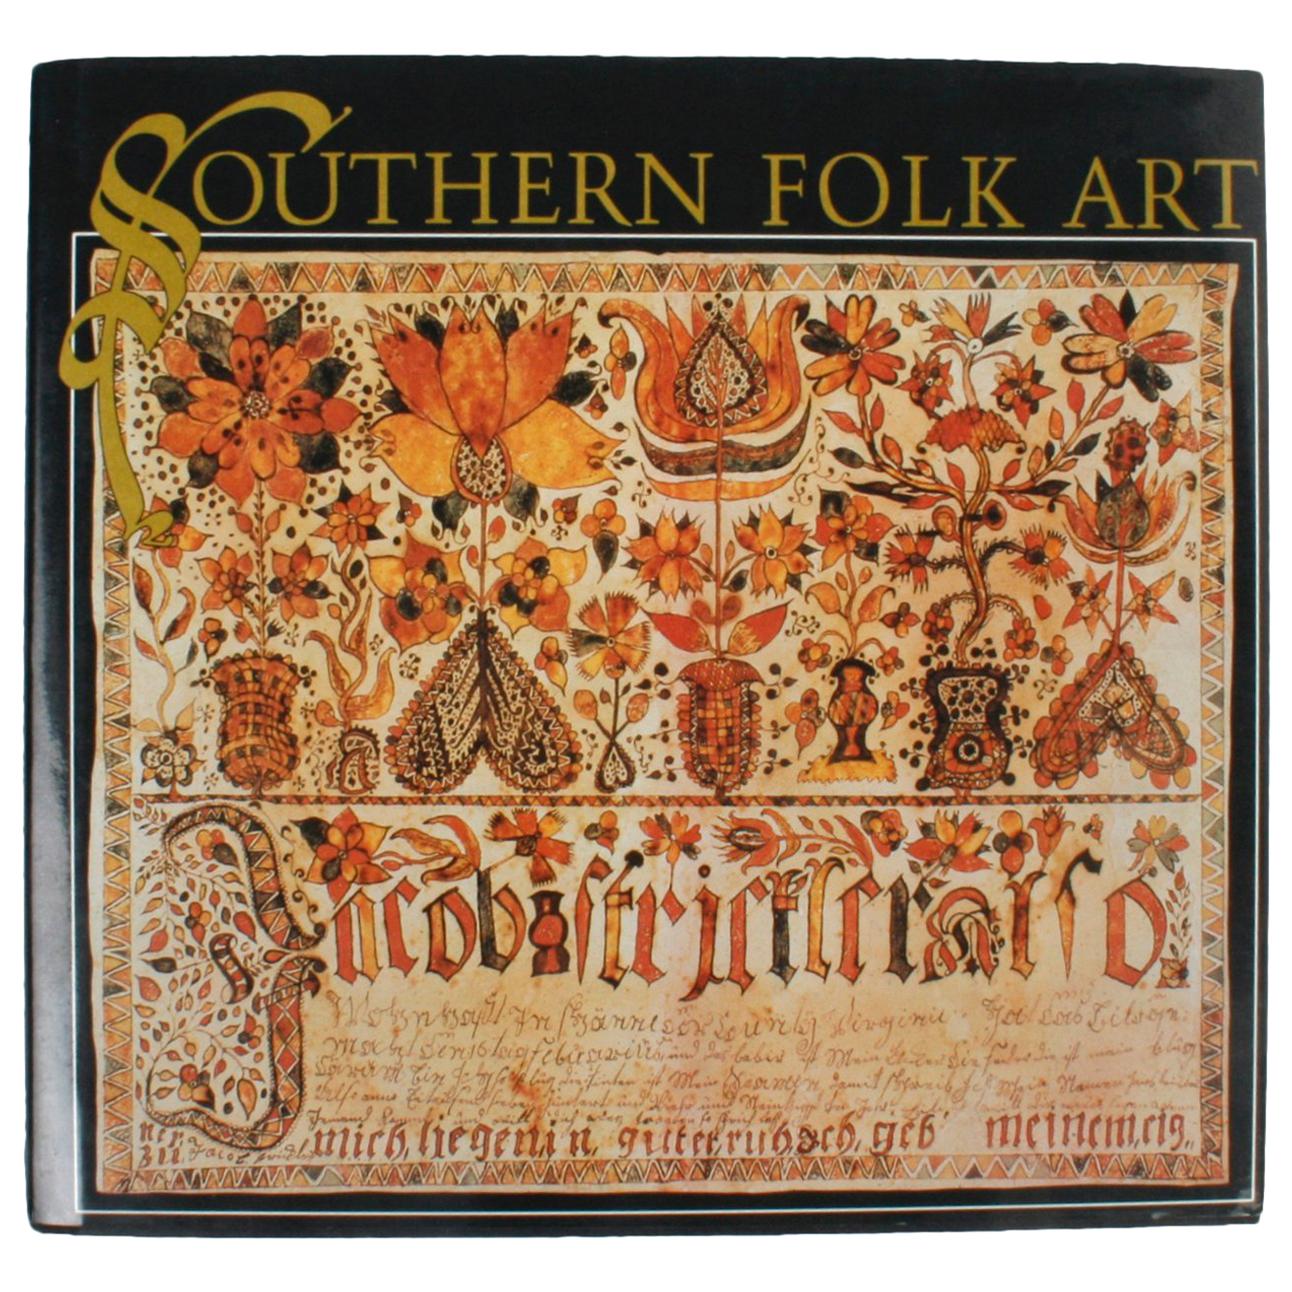 Artisanat du Sud, par Cynthia Elyce Rubin, première édition